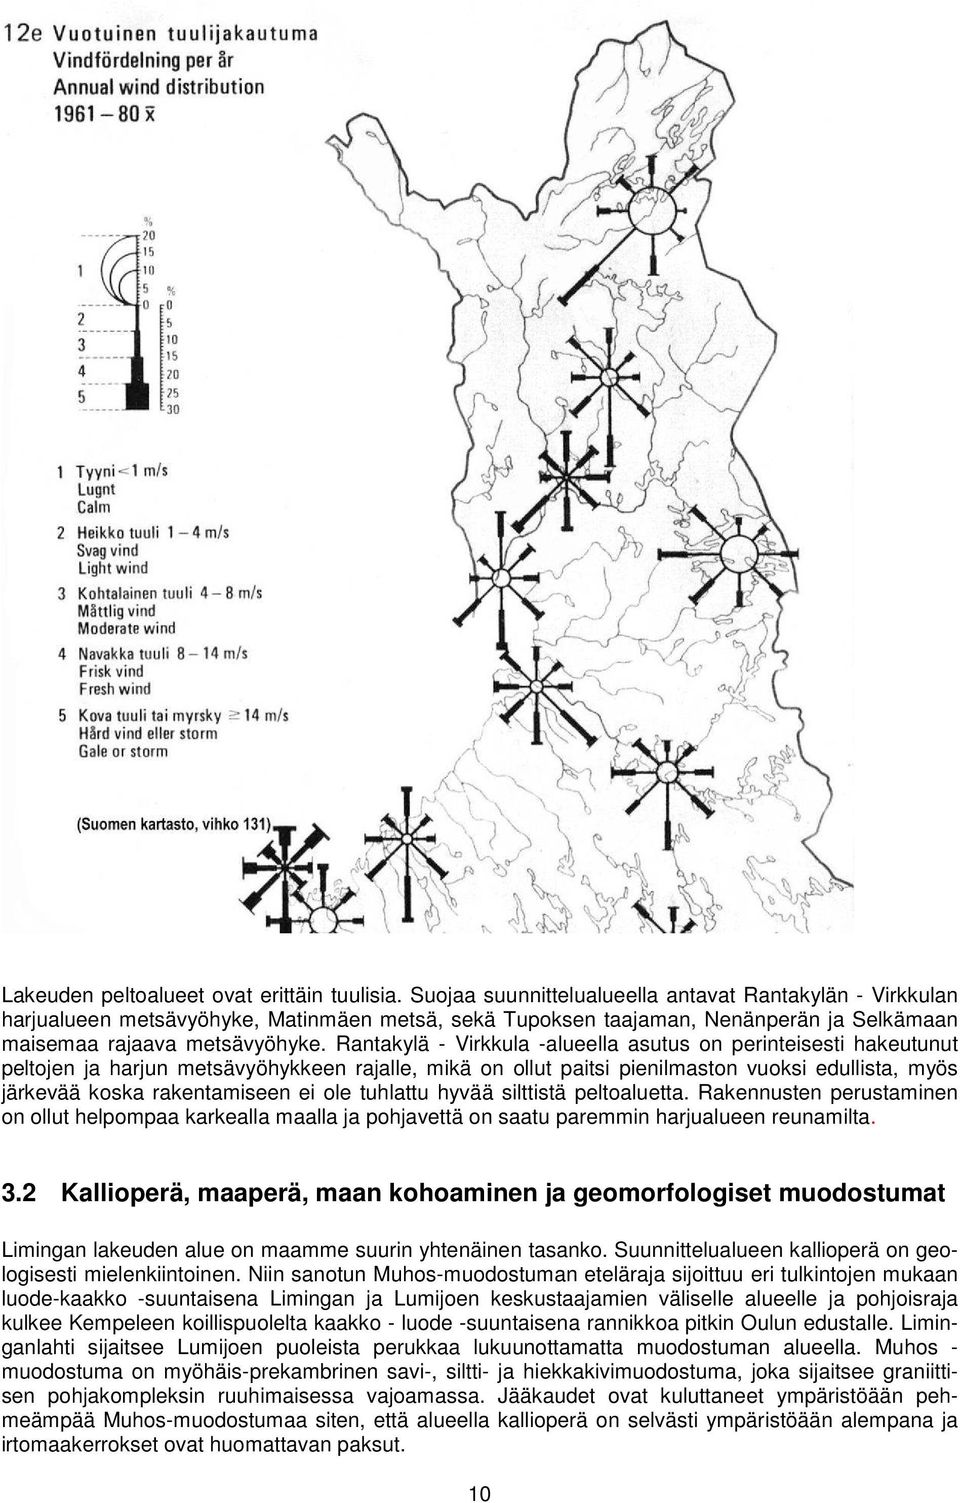 Rantakylä - Virkkula -alueella asutus on perinteisesti hakeutunut peltojen ja harjun metsävyöhykkeen rajalle, mikä on ollut paitsi pienilmaston vuoksi edullista, myös järkevää koska rakentamiseen ei